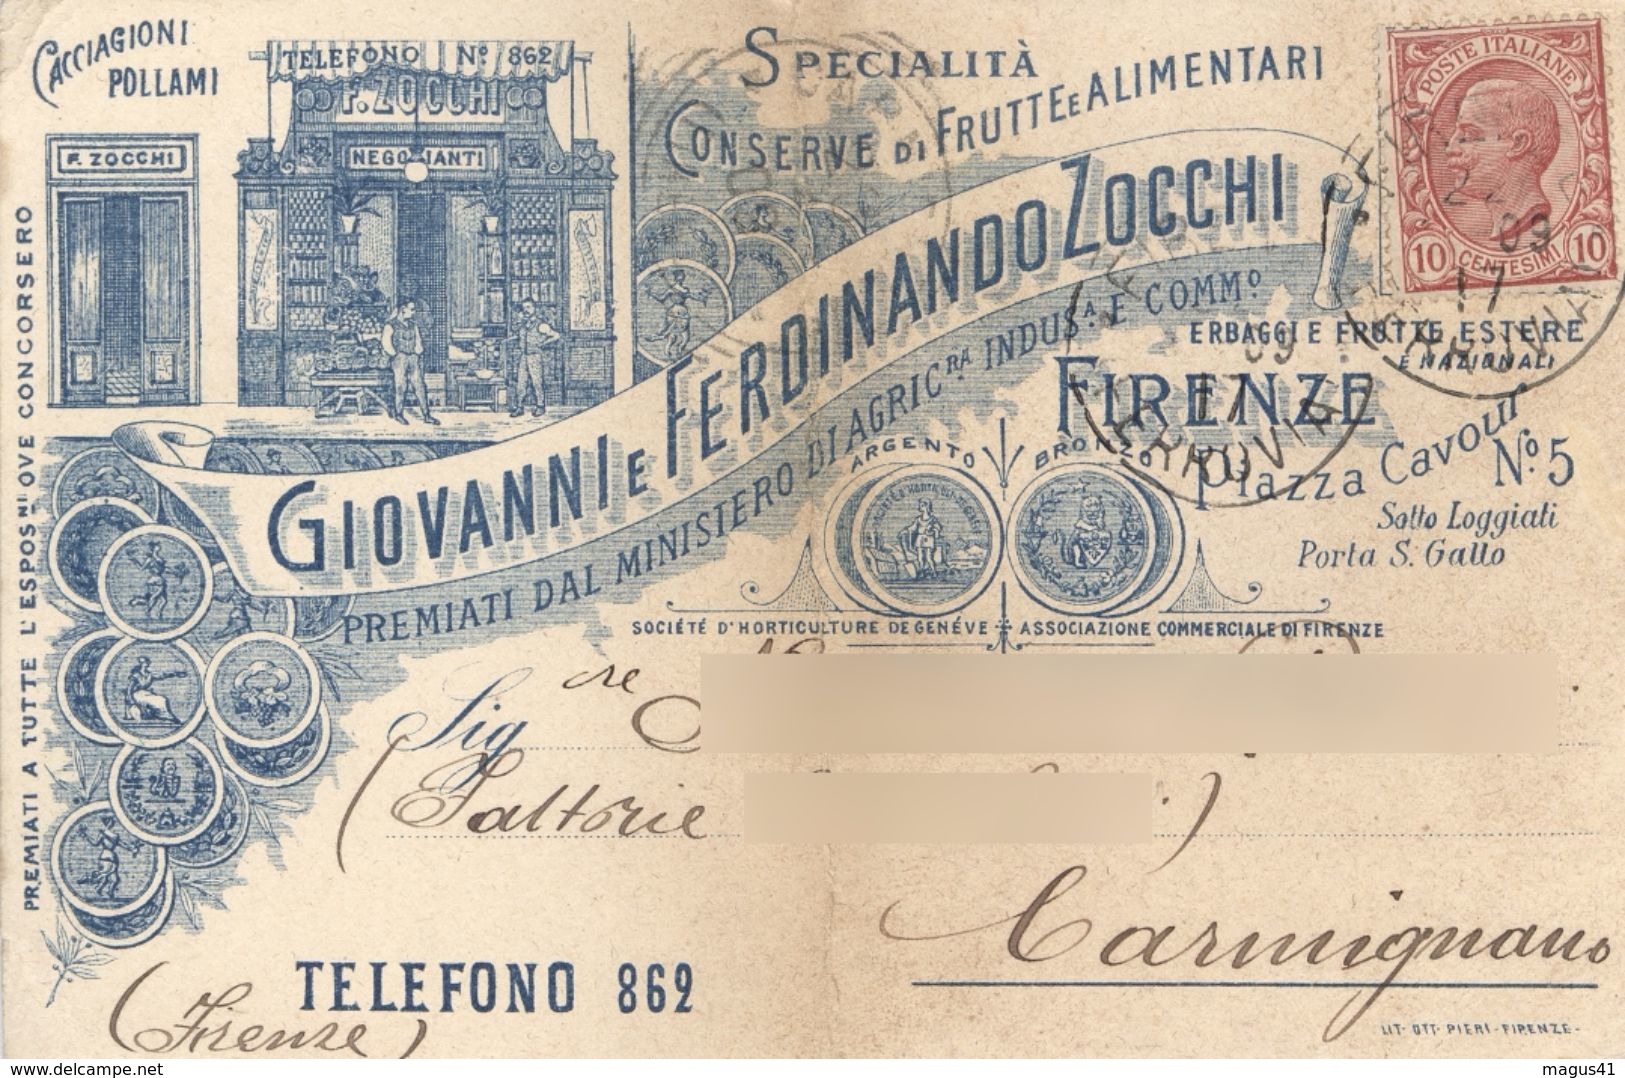 FIRENZE - DITTA GIOVANNI E FERDINANDO ZOCCHI CONSERVE FRUTTA ALIMENTARI - CARTOLINA COMMERCIALE - VG 1909 - Firenze